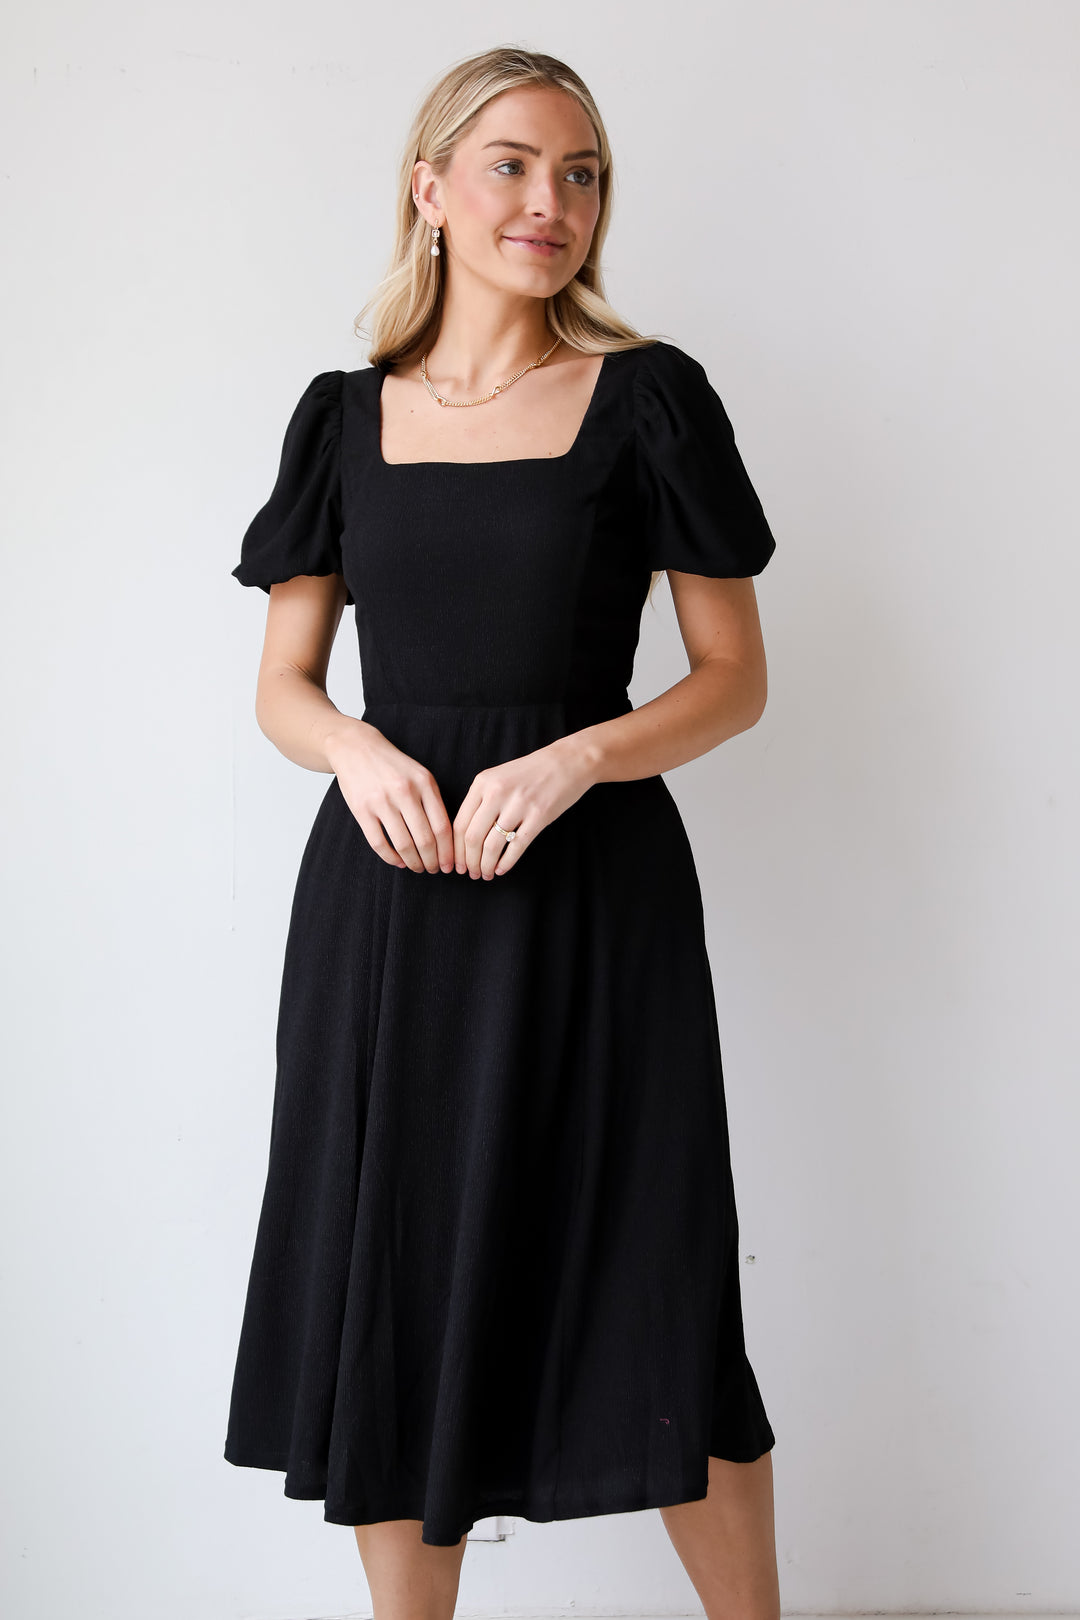 Black Midi Dress, You're The One Black Midi Dress, Black Mini Dress, Black Dress, Dress Boutique, Women's Black Dress